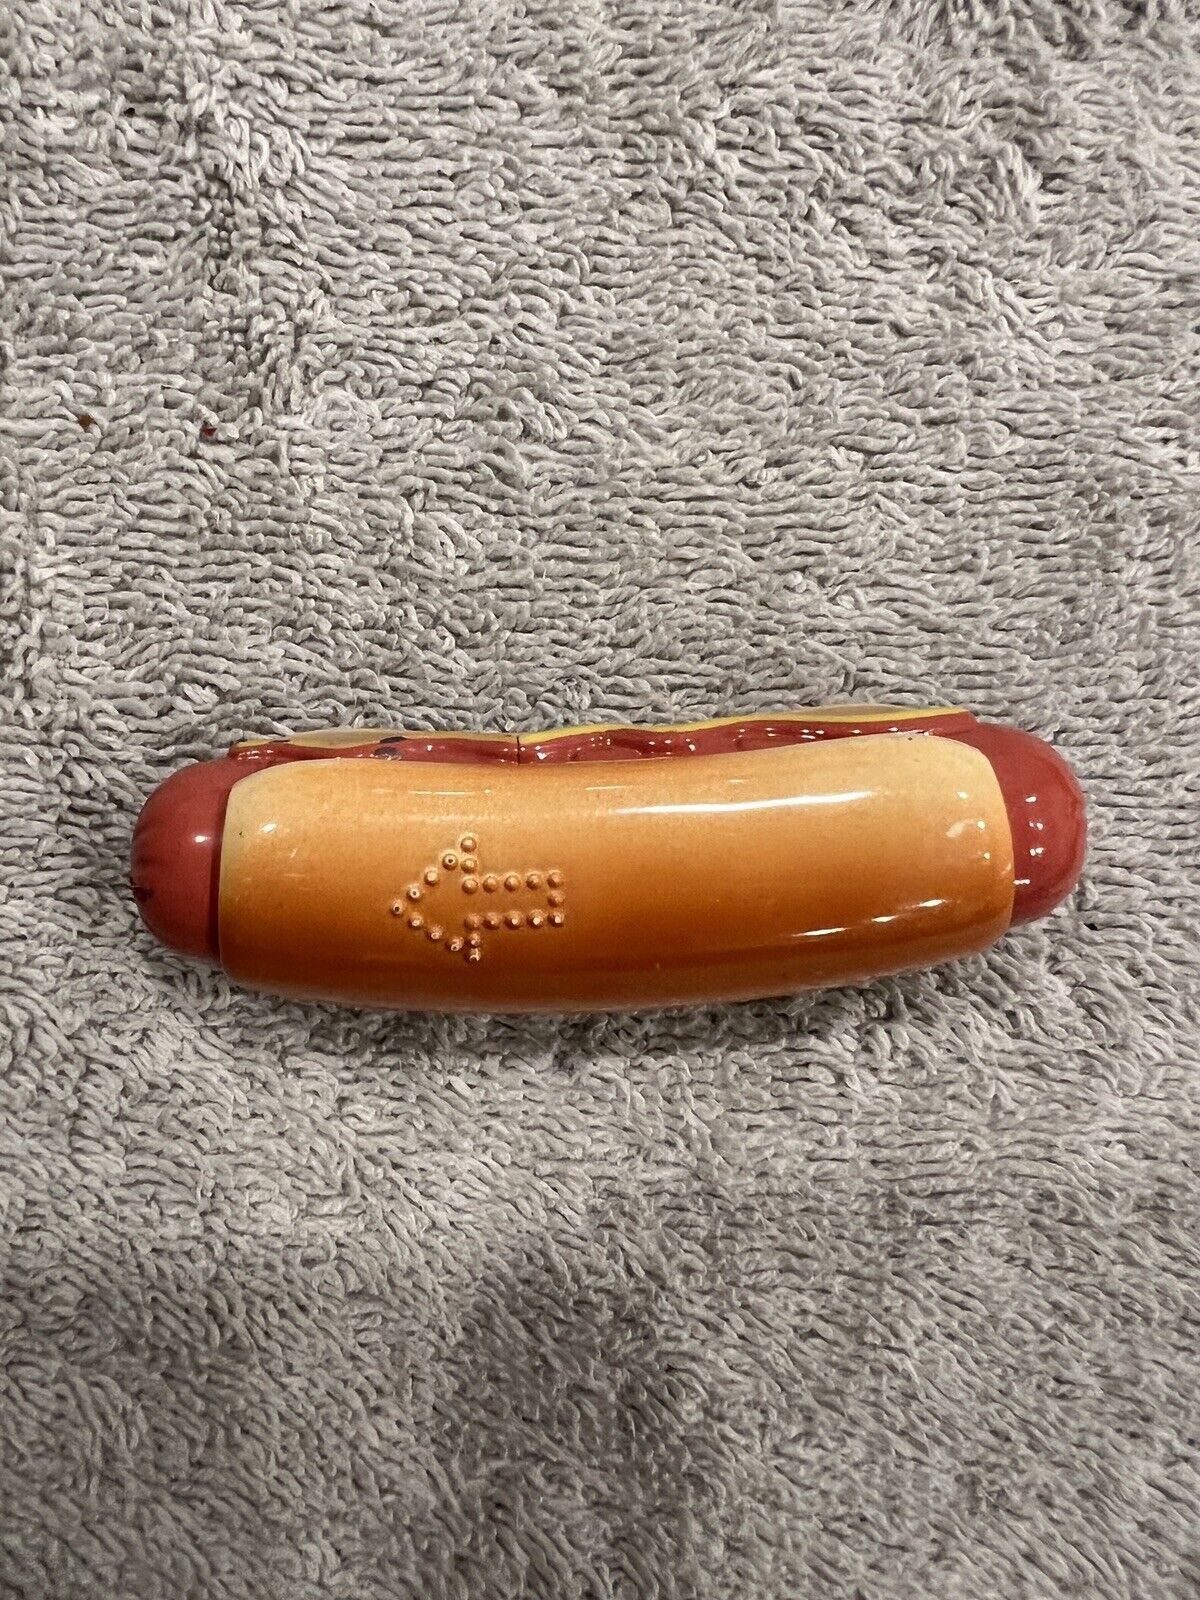 Rare Vintage Hot Dog Shaped Lighter.